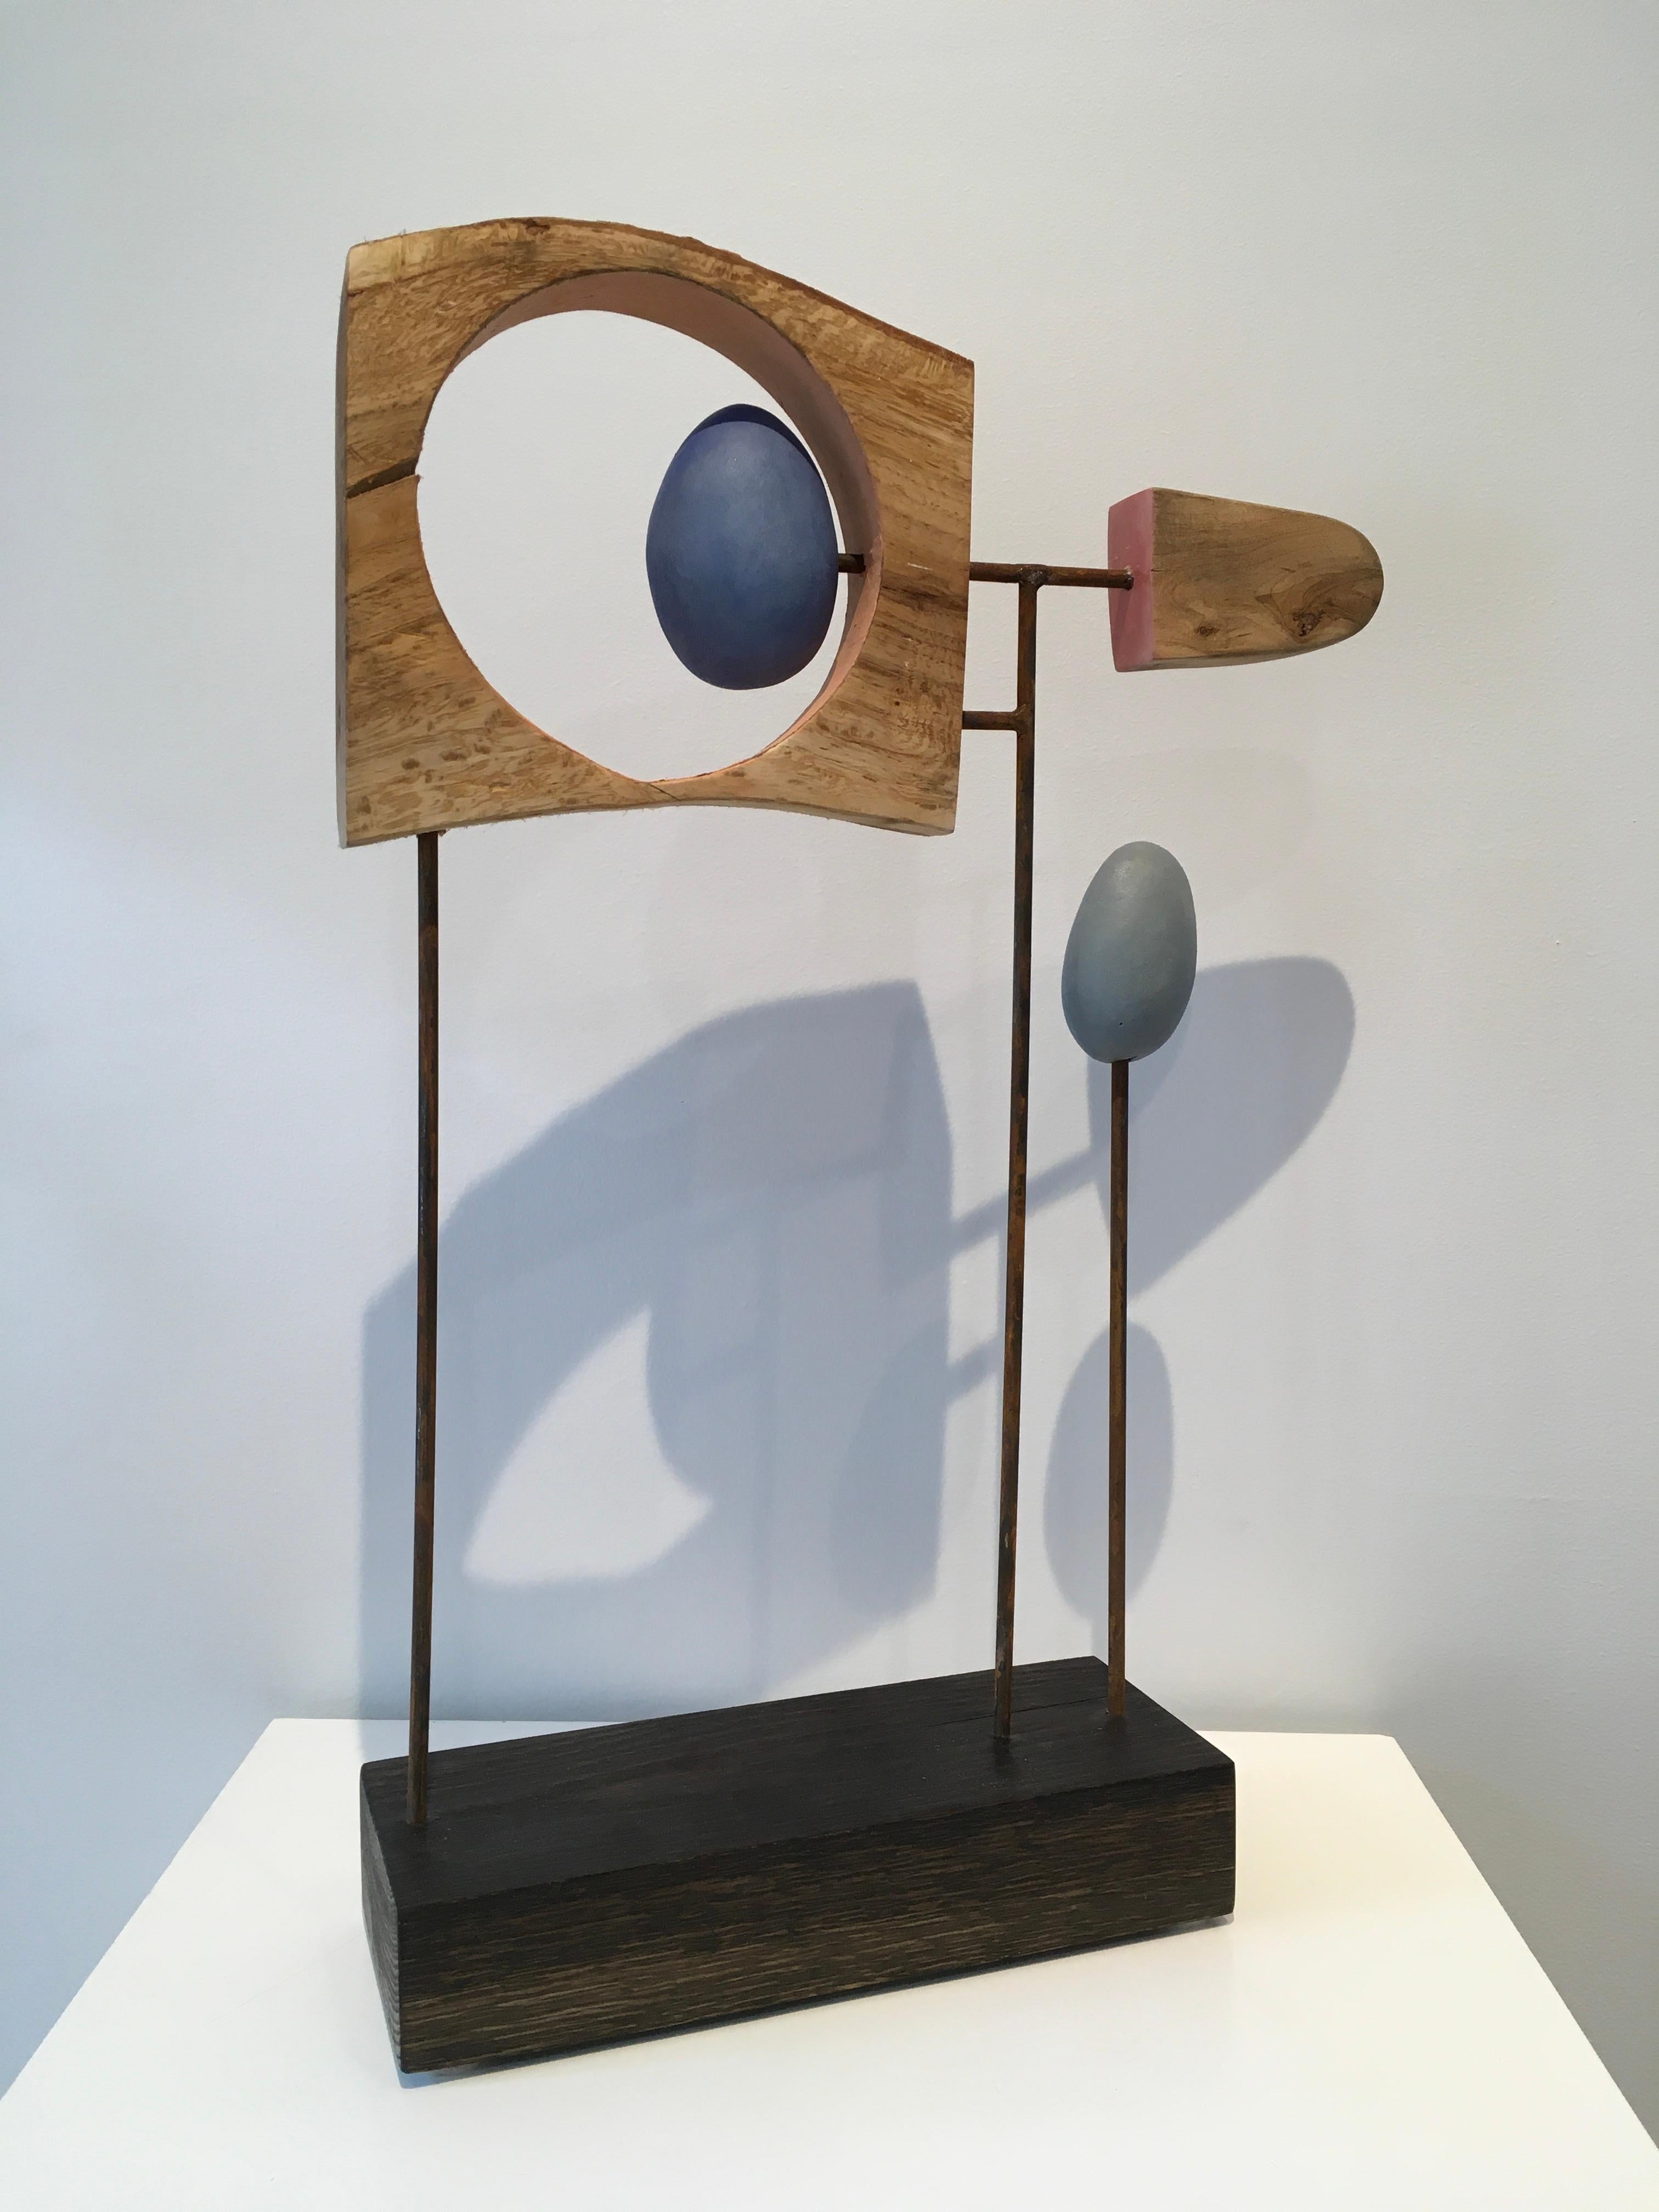 John Wolfes abstrakte Mixed-Media-Skulptur "Untitled Assemblage #S 3-23" vereint Holz, Stahl, Keramikelemente und Acrylfarbe. Die warmen Farben des Holzes und der bemalten Keramikelemente lockern die geradlinige Anordnung auf. Die geringe Tiefe der